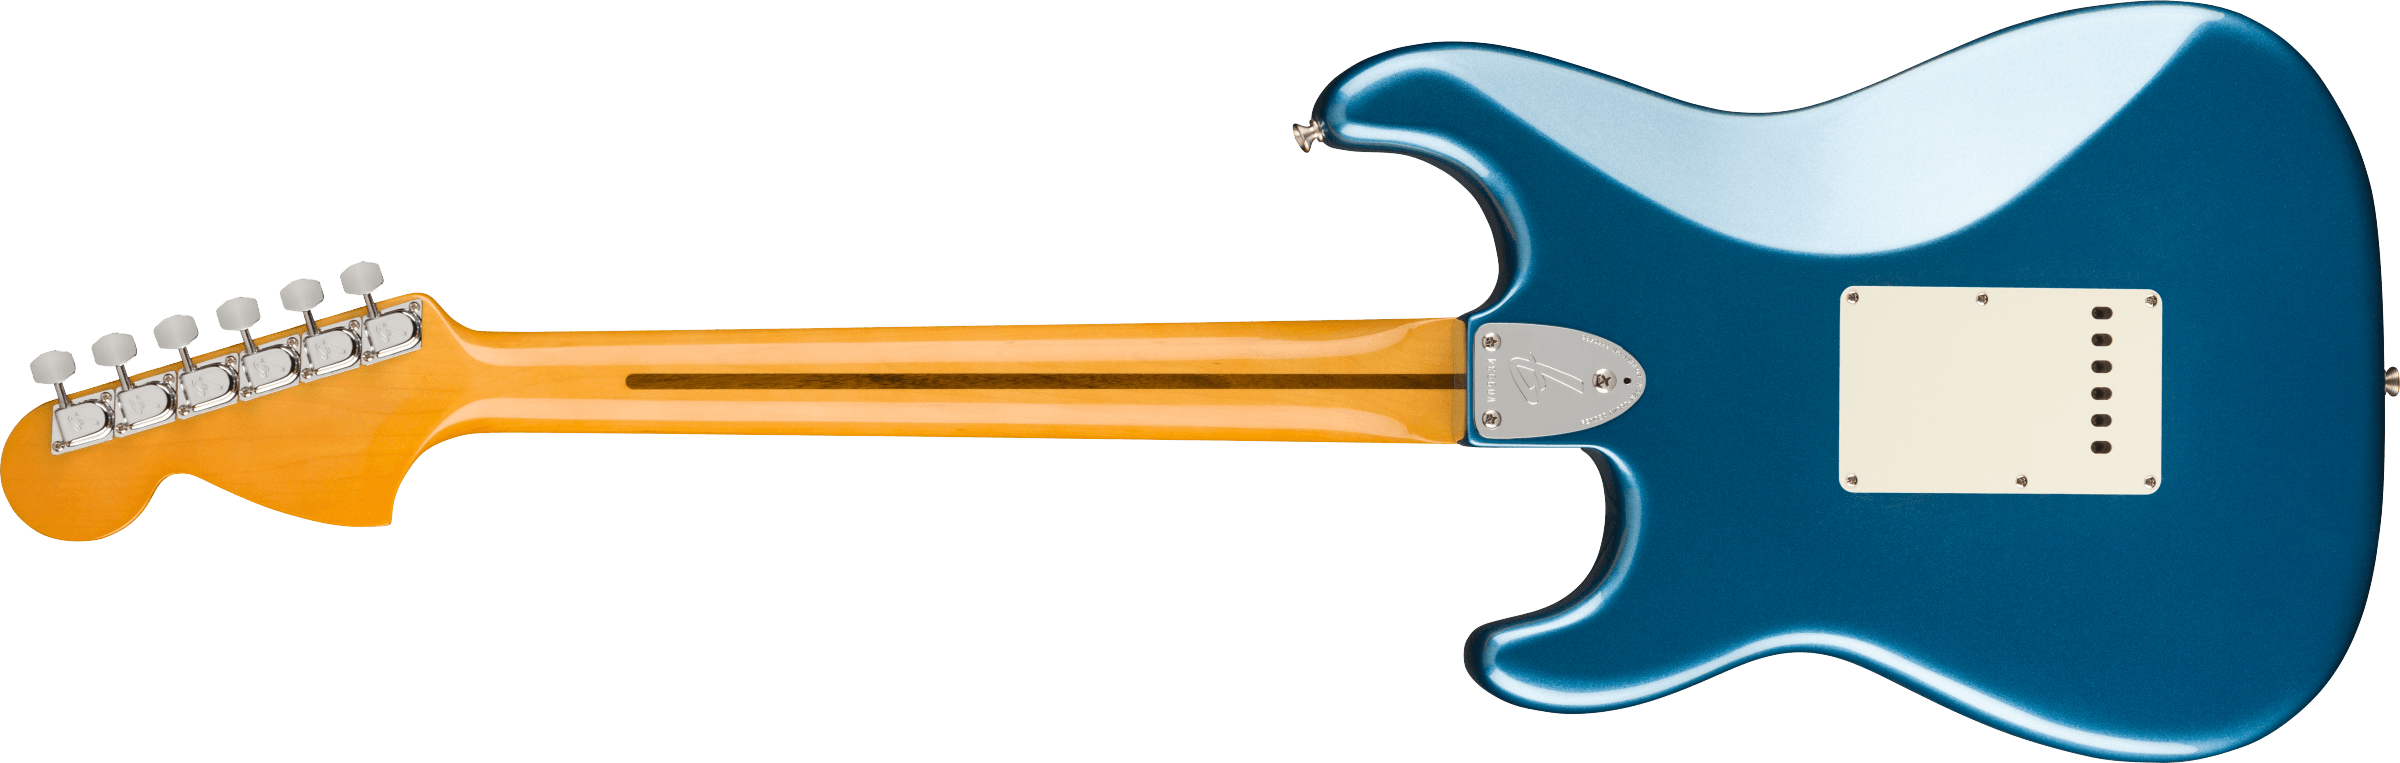 Fender American Vintage II 1973 Stratocaster Maple Fingerboard, Lake Placid Blue 0110272802